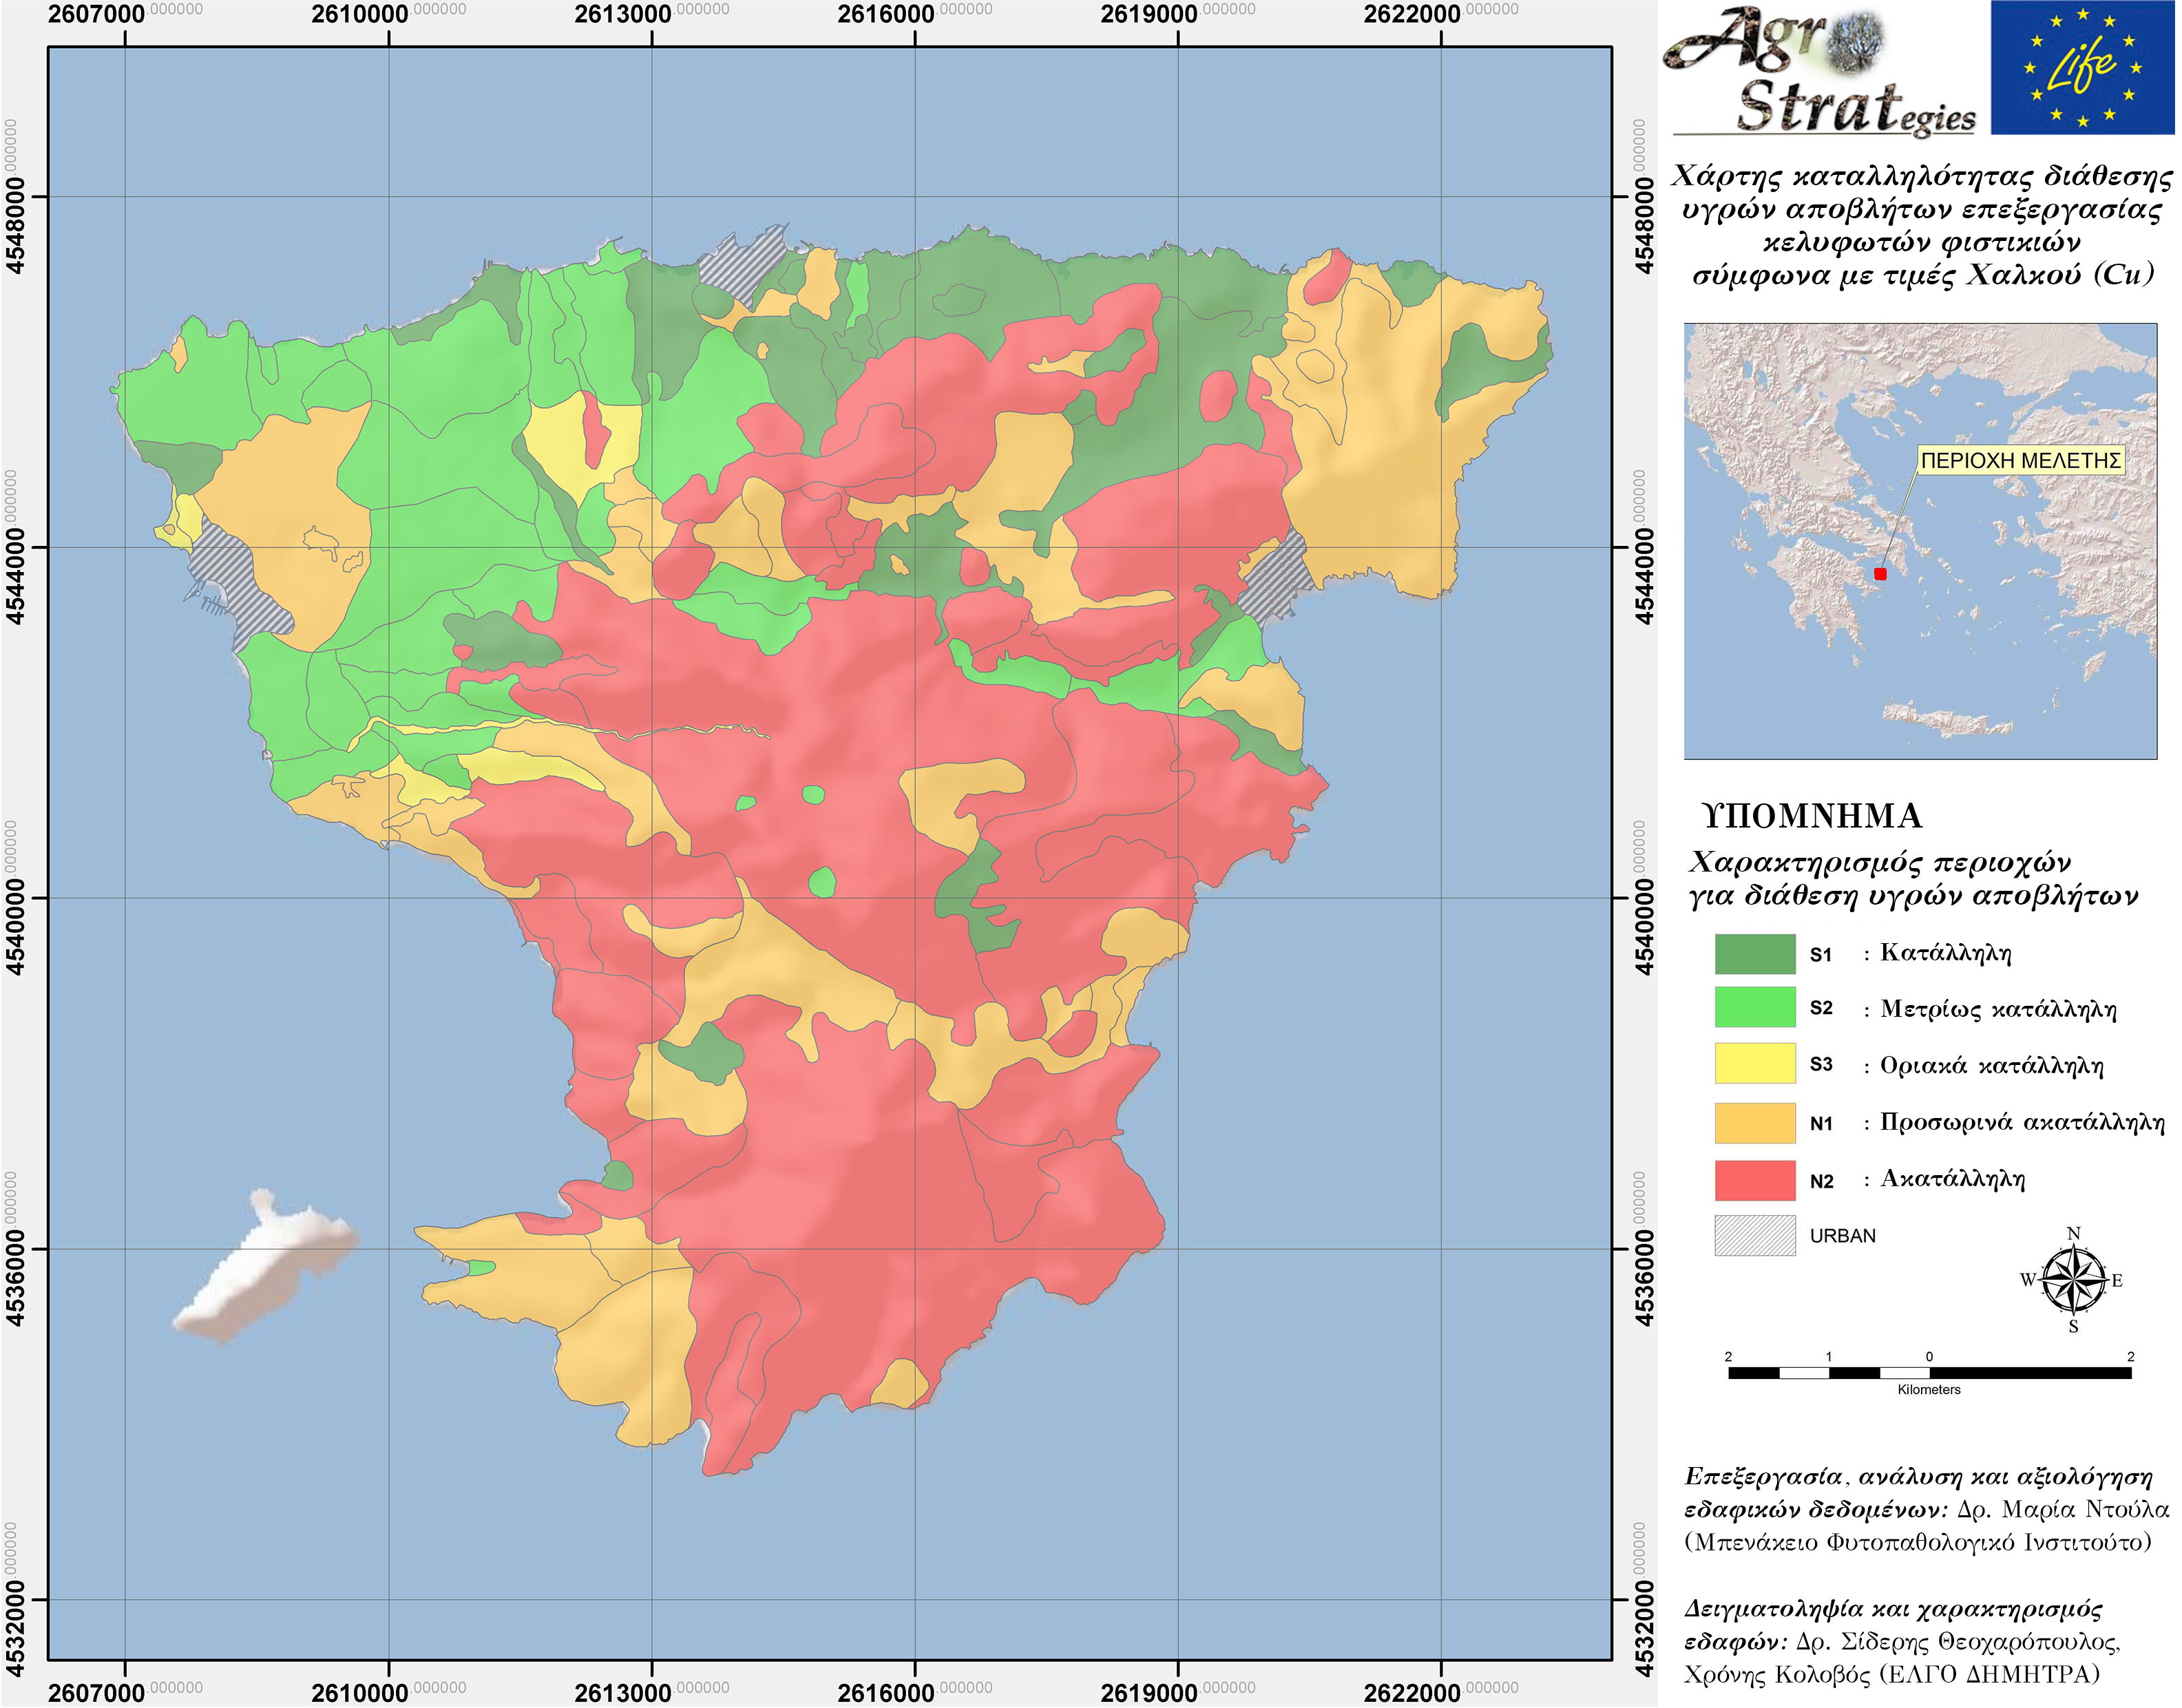 Δρ. Μ. Κ. Ντούλα.Χάρτης Καταλληλότητας Εδάφους για τη διασπορά υγρών αποβλήτων κελυφωτών φυστικιών ν. Αίγινας ως προς την περιεκτικότητα σε διαθέσιμο Χαλκό (LIFE-AgroStrat)